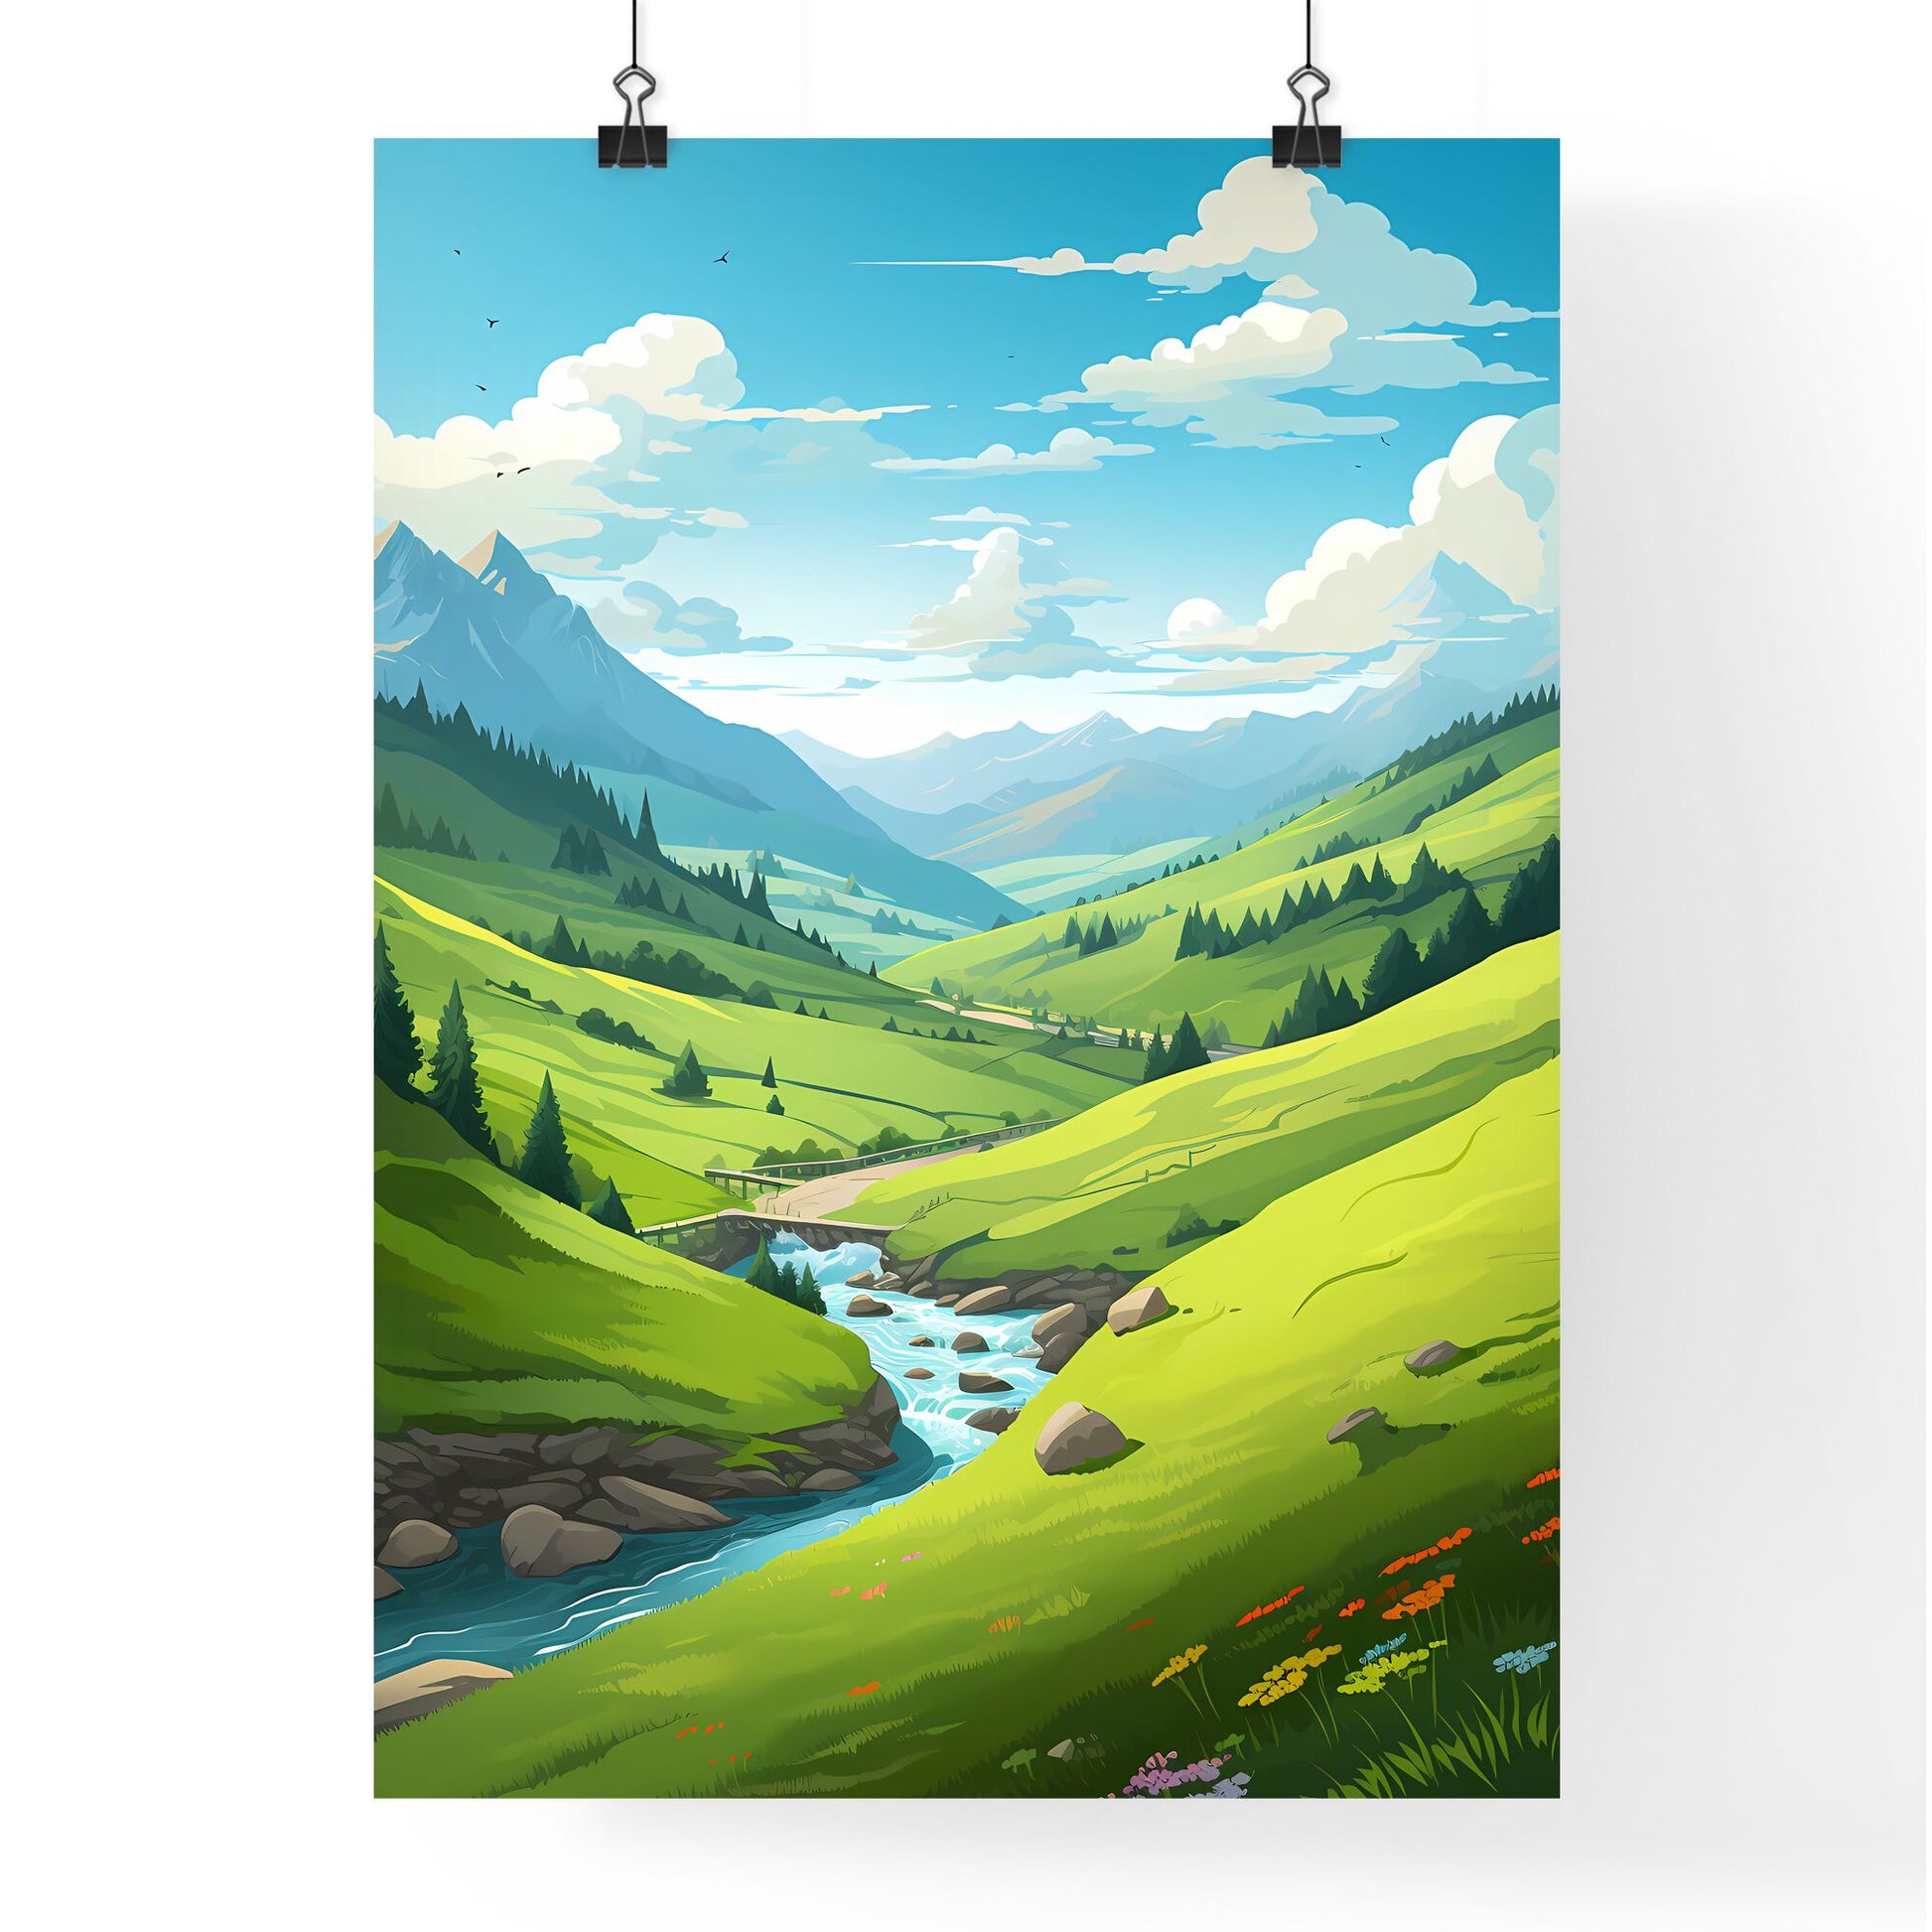 River Running Through A Valley Art Print Default Title